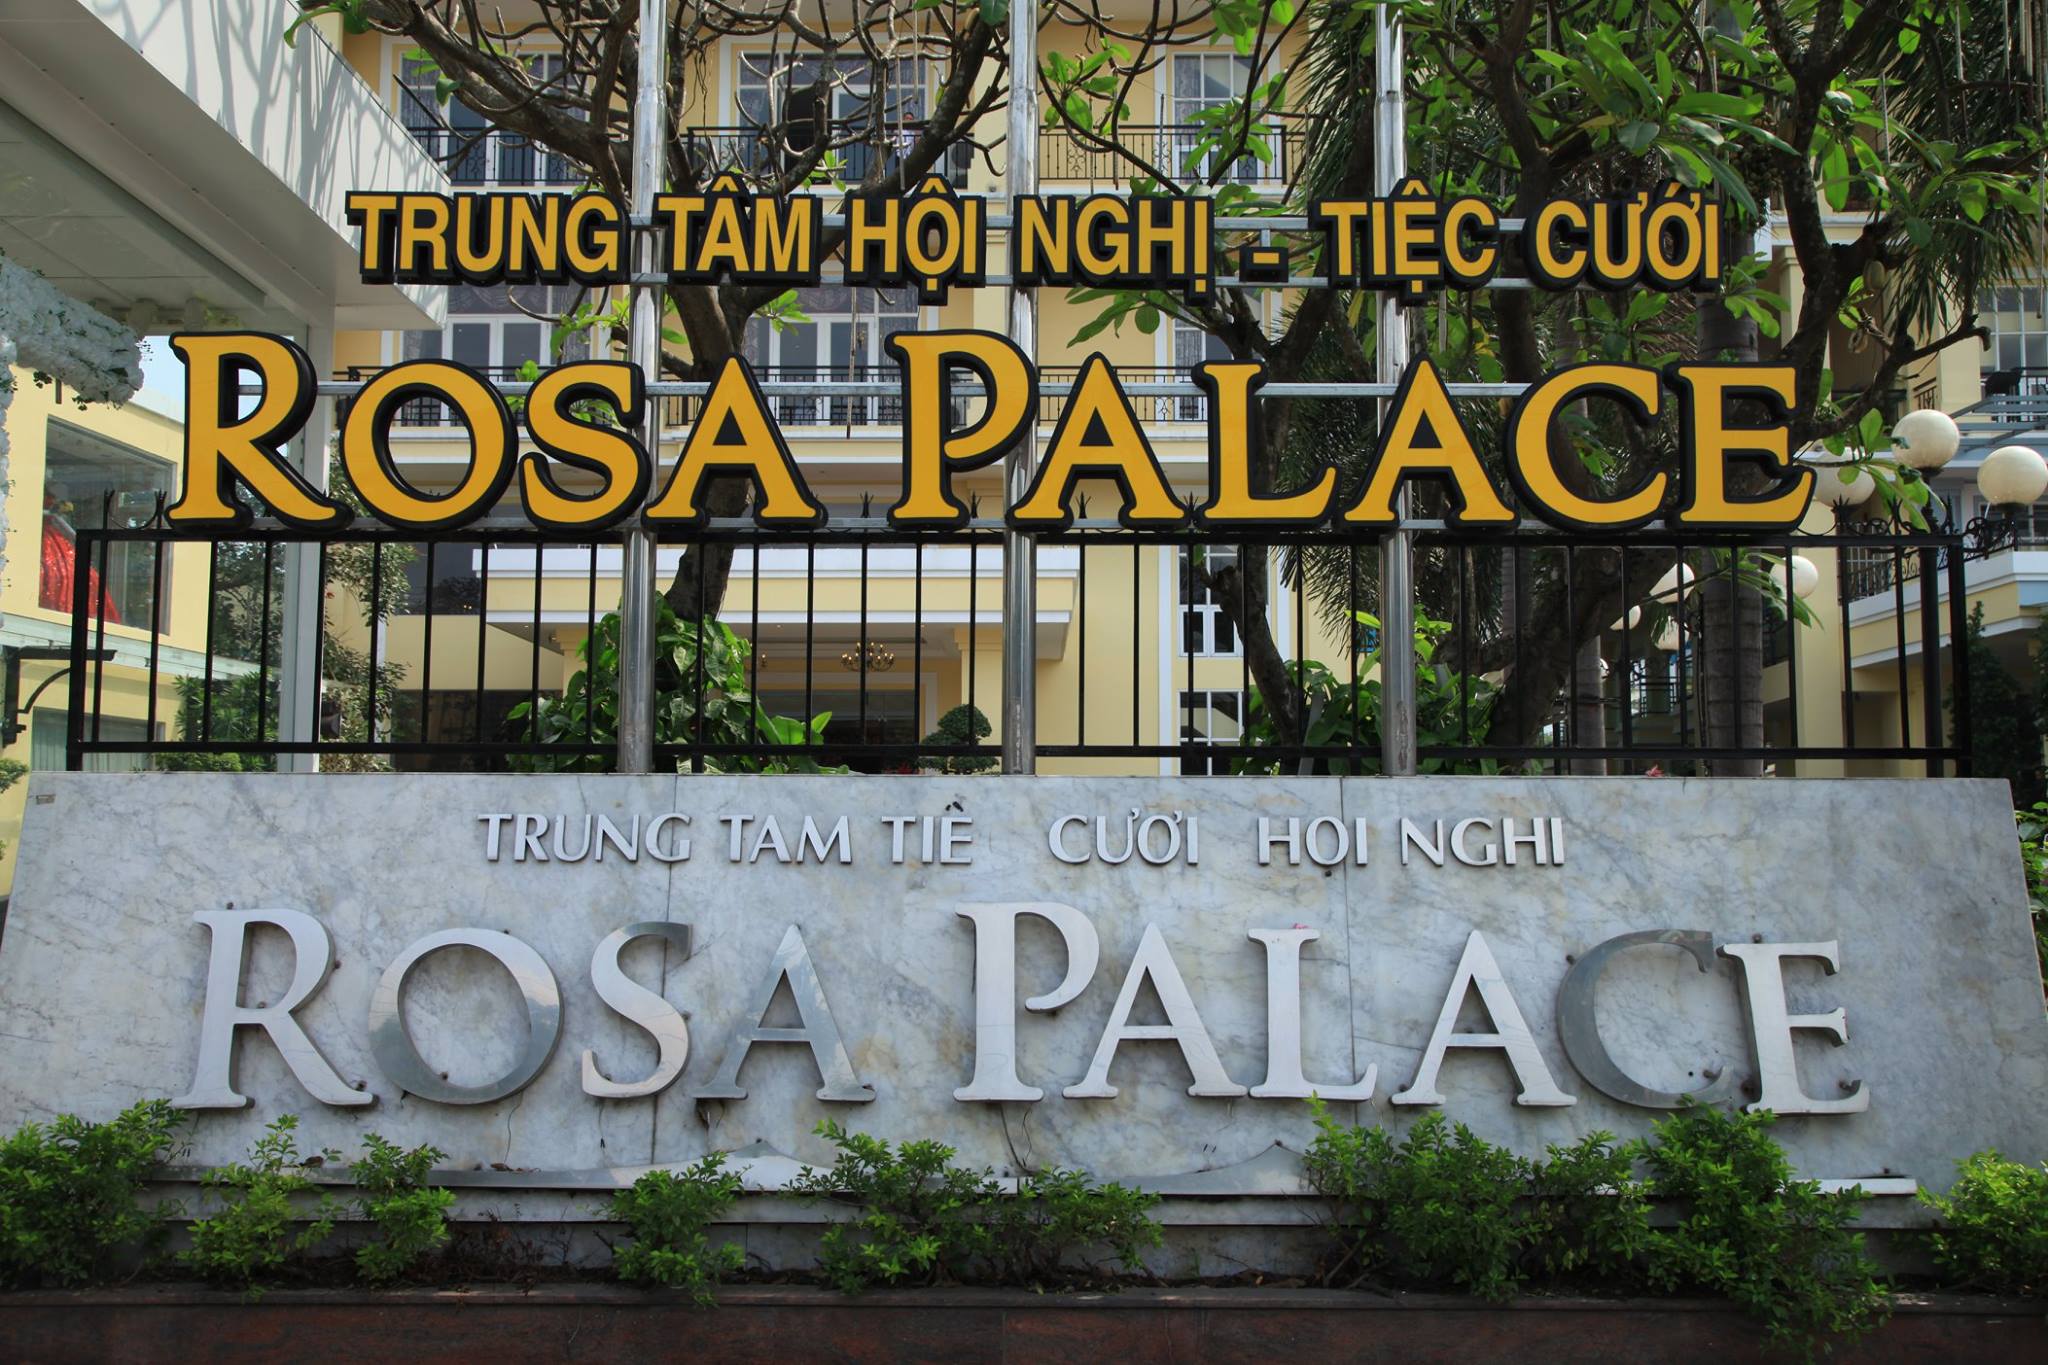 Trung Tâm Hội Nghị - Tiệc Cưới Rosa Palace